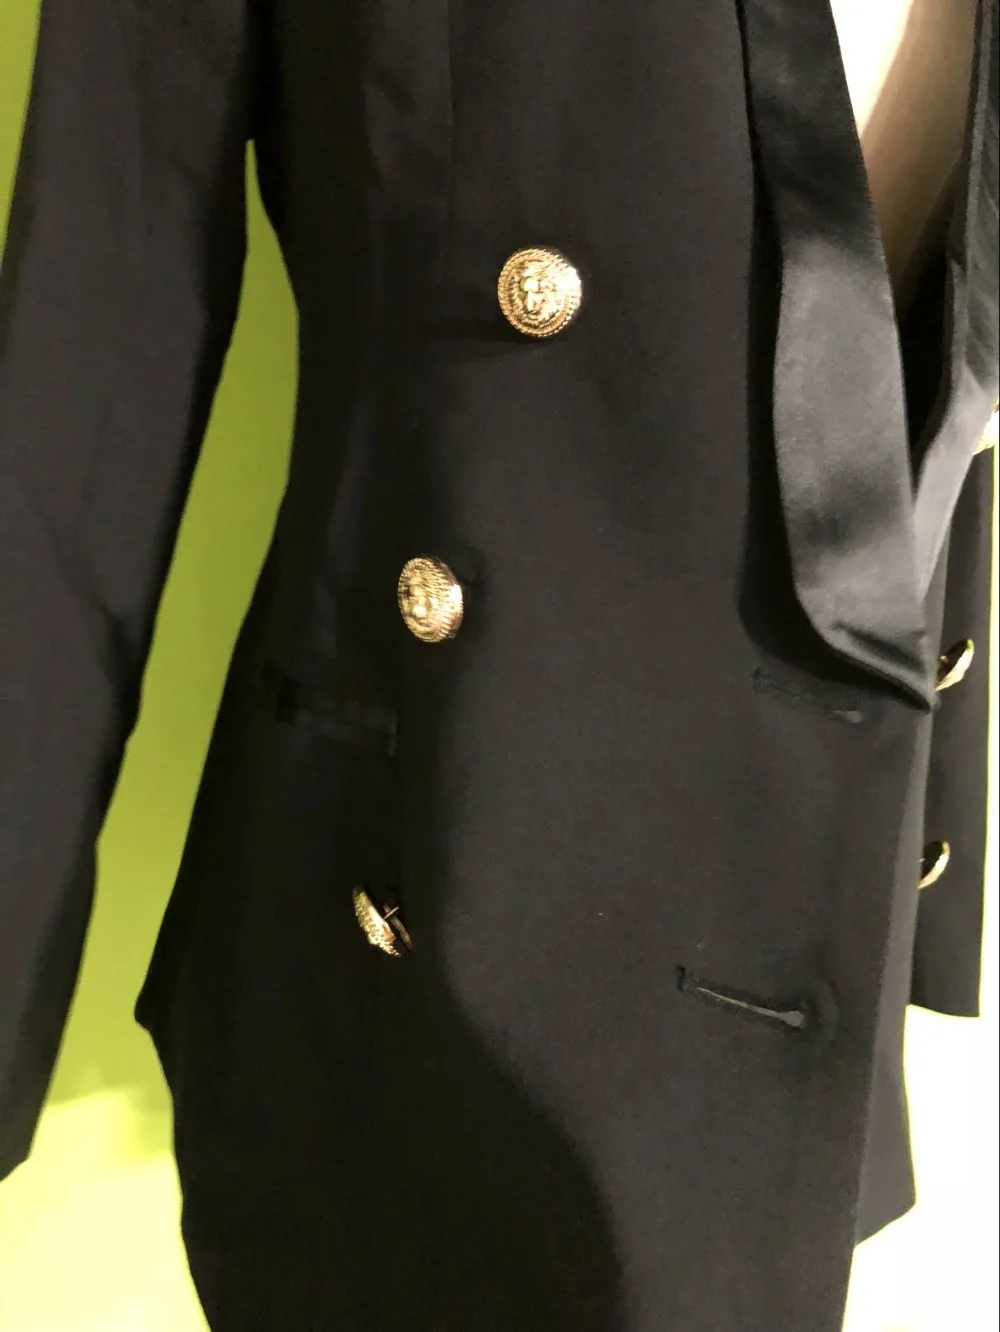 LXUNYI дамы двубортный блейзер с поясом 2019 весна металла пуговицы для женщин пиджаки для и куртки офисные тонкий формальный костюм пальт